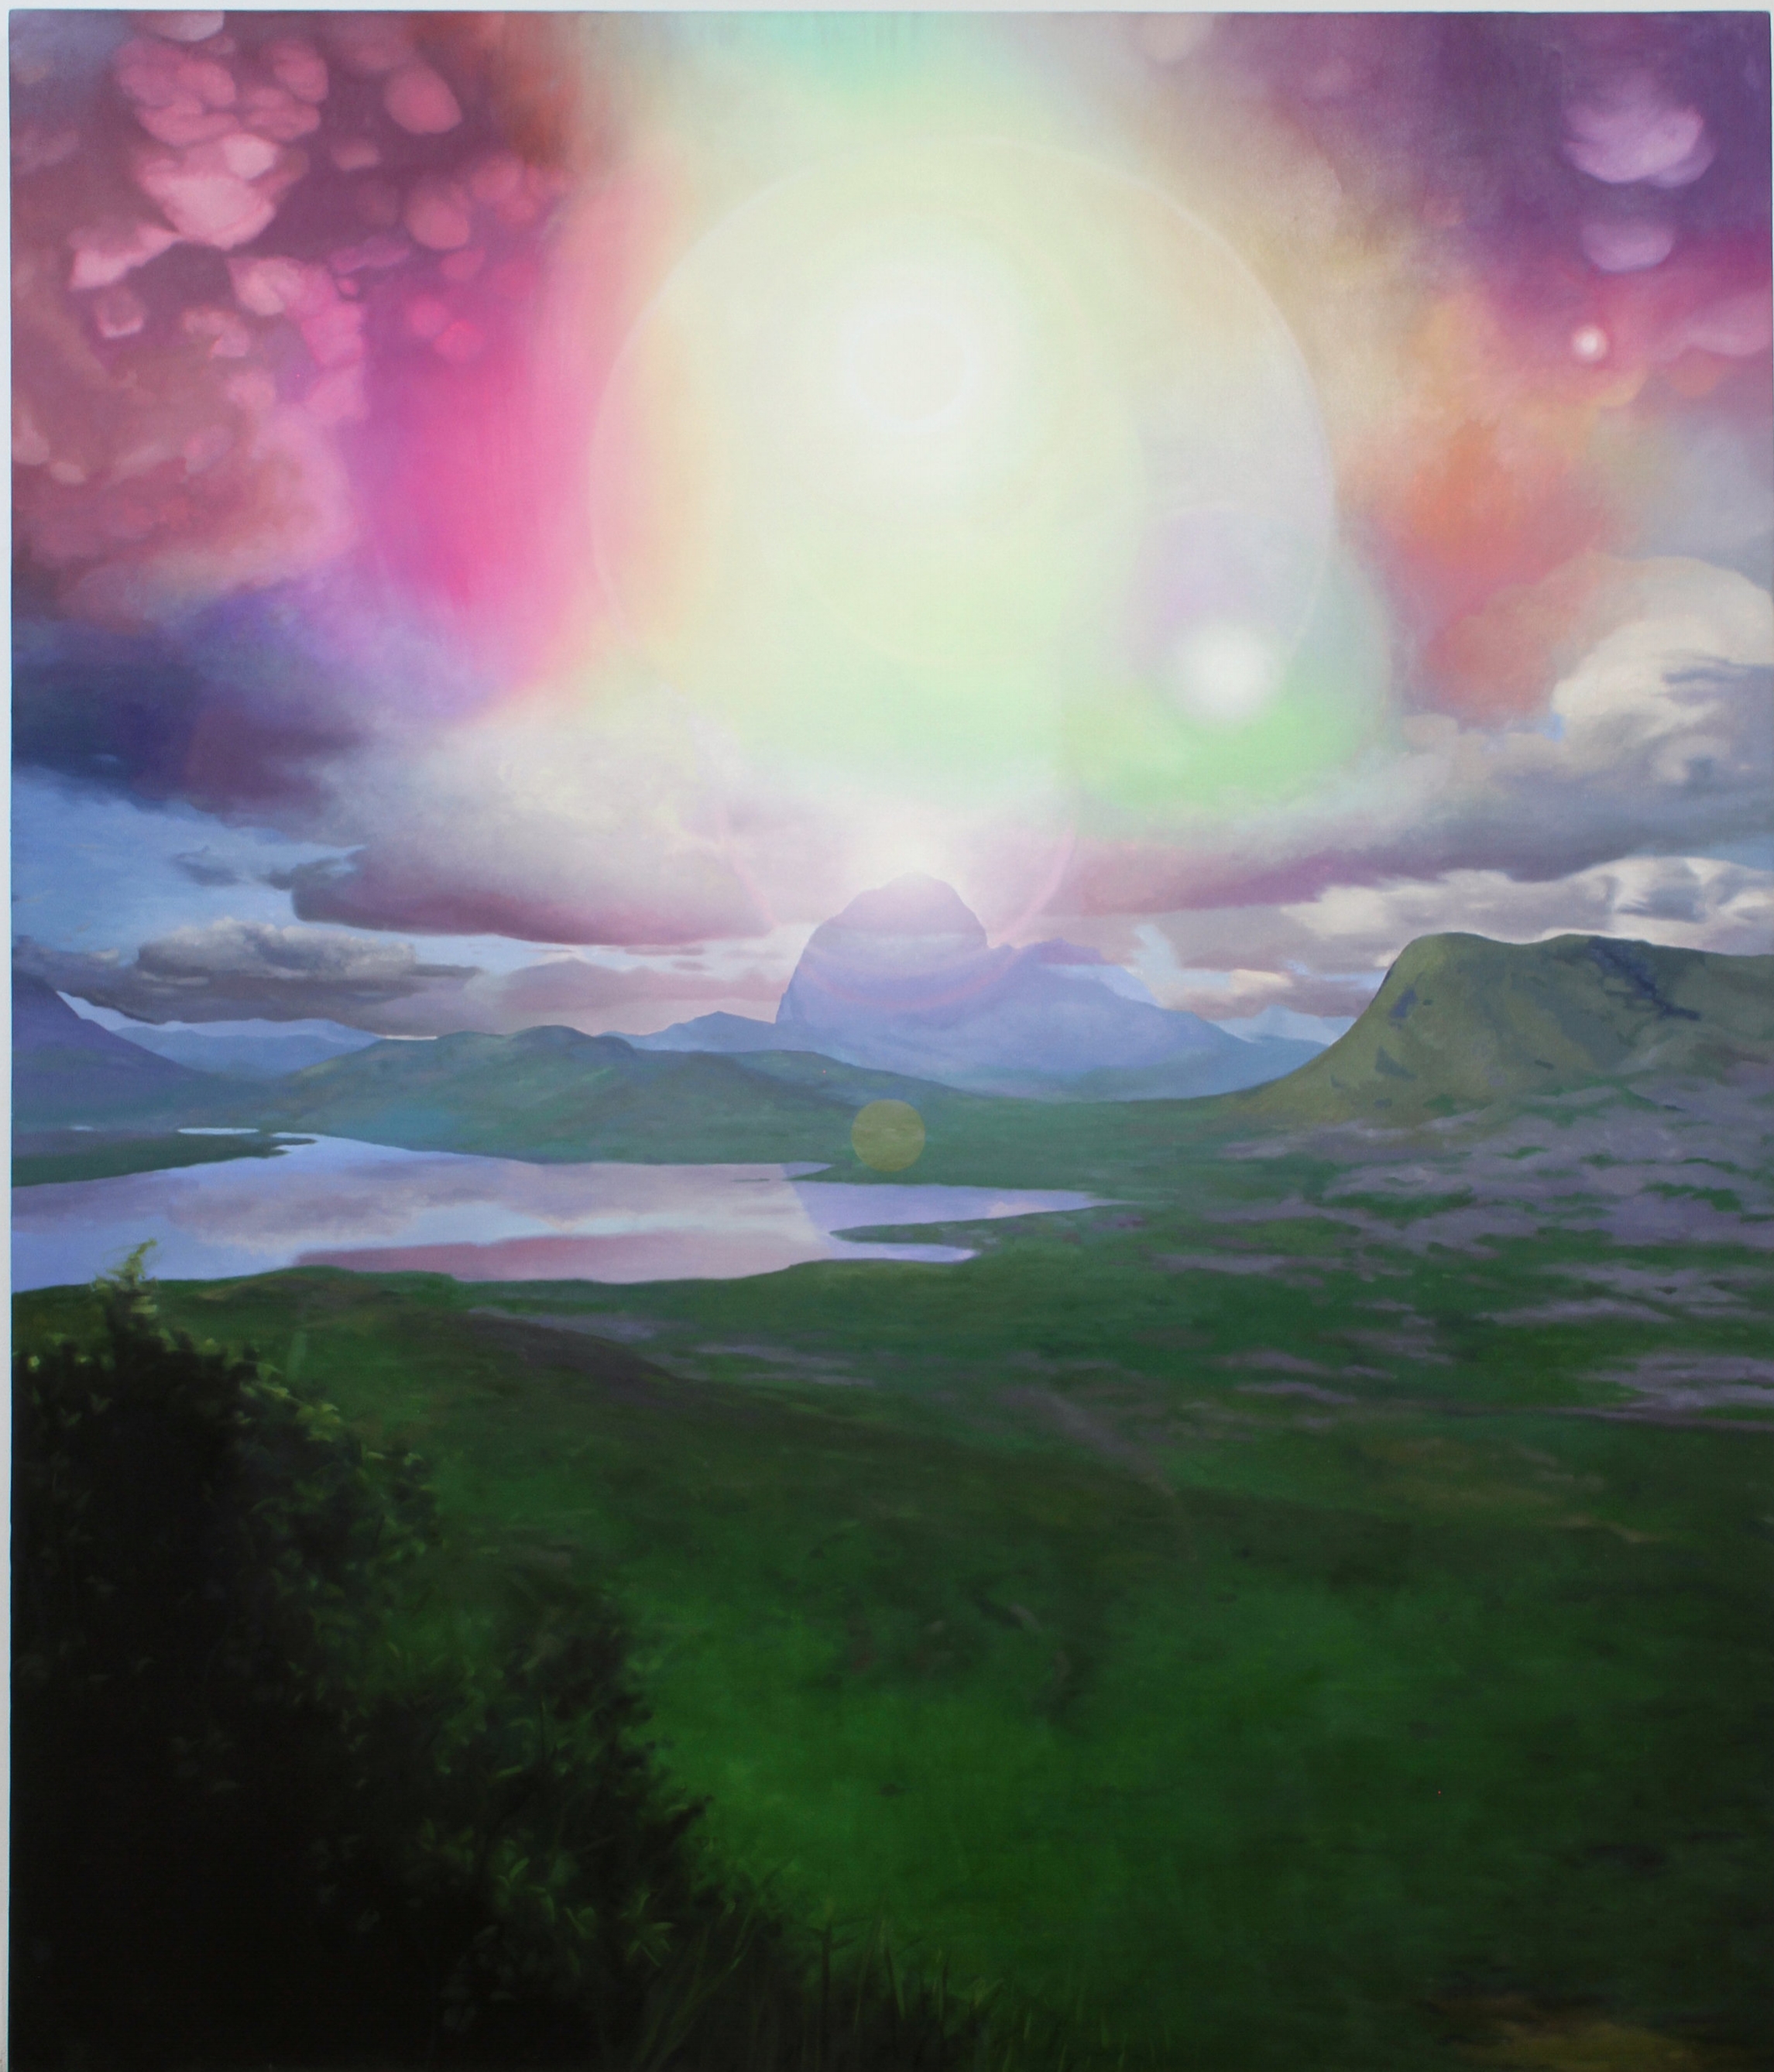 Sky Phenomenon, oil on canvas, 82"X 60" 2005-12